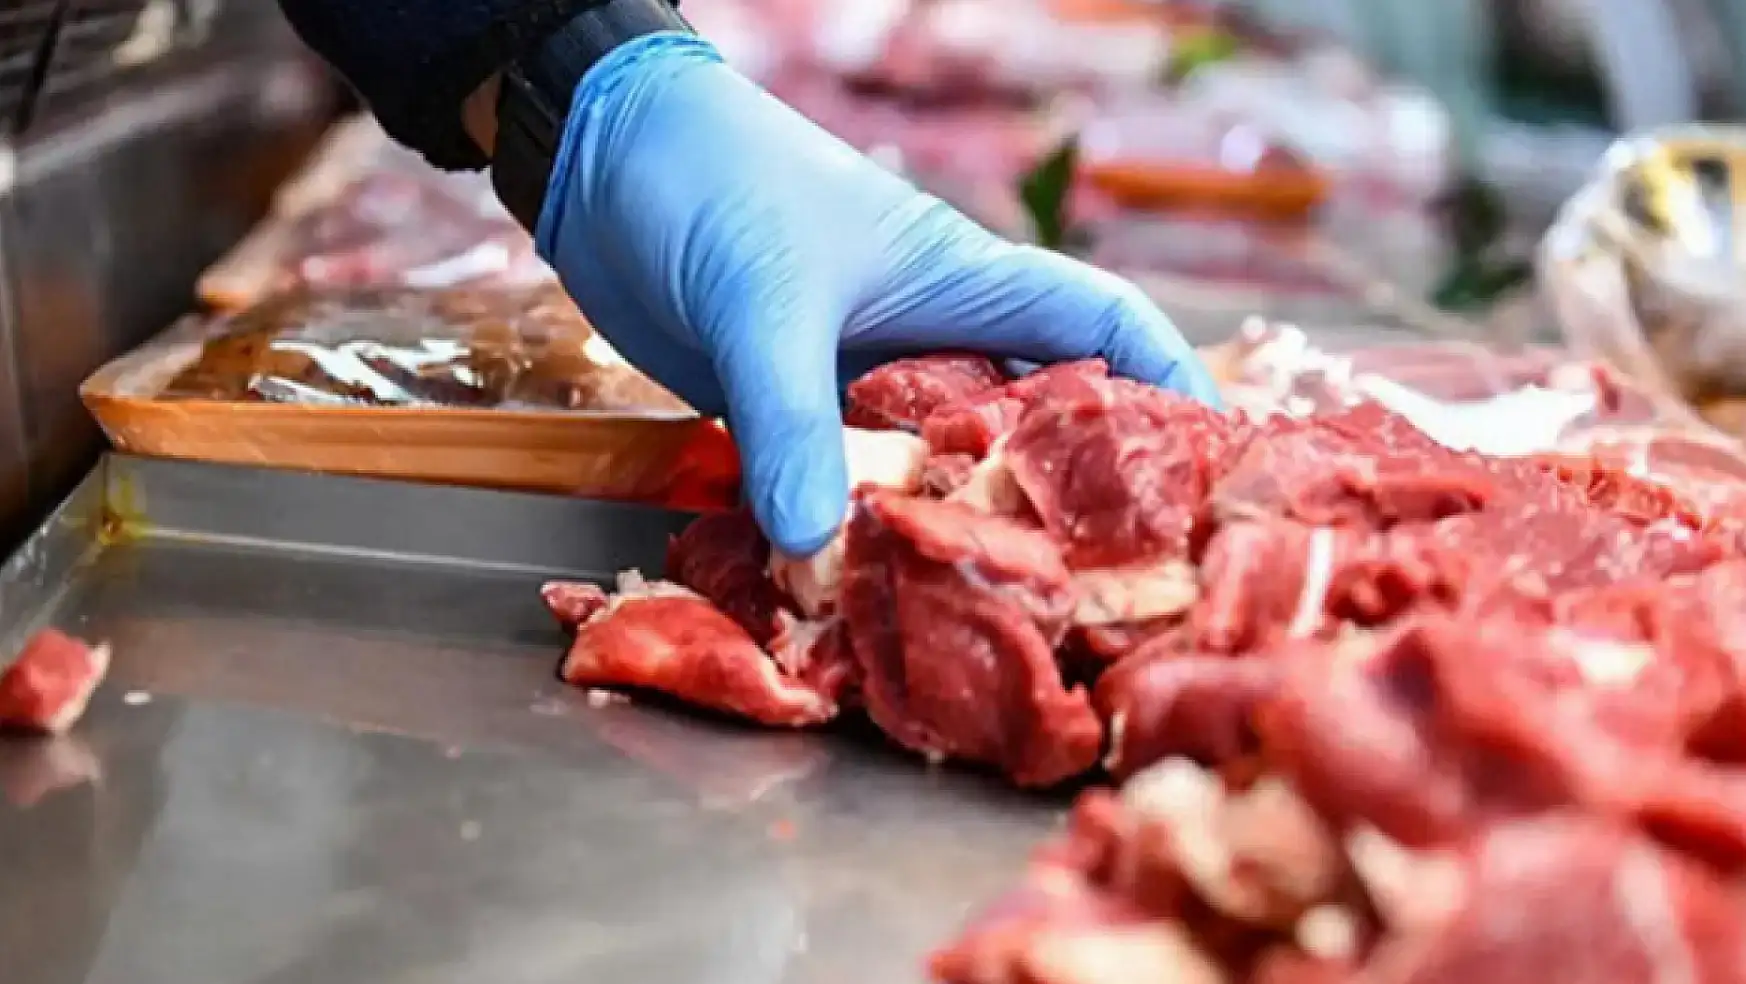 Kırmızı et üretimi 2023 yılında yüzde 8,8 arttı